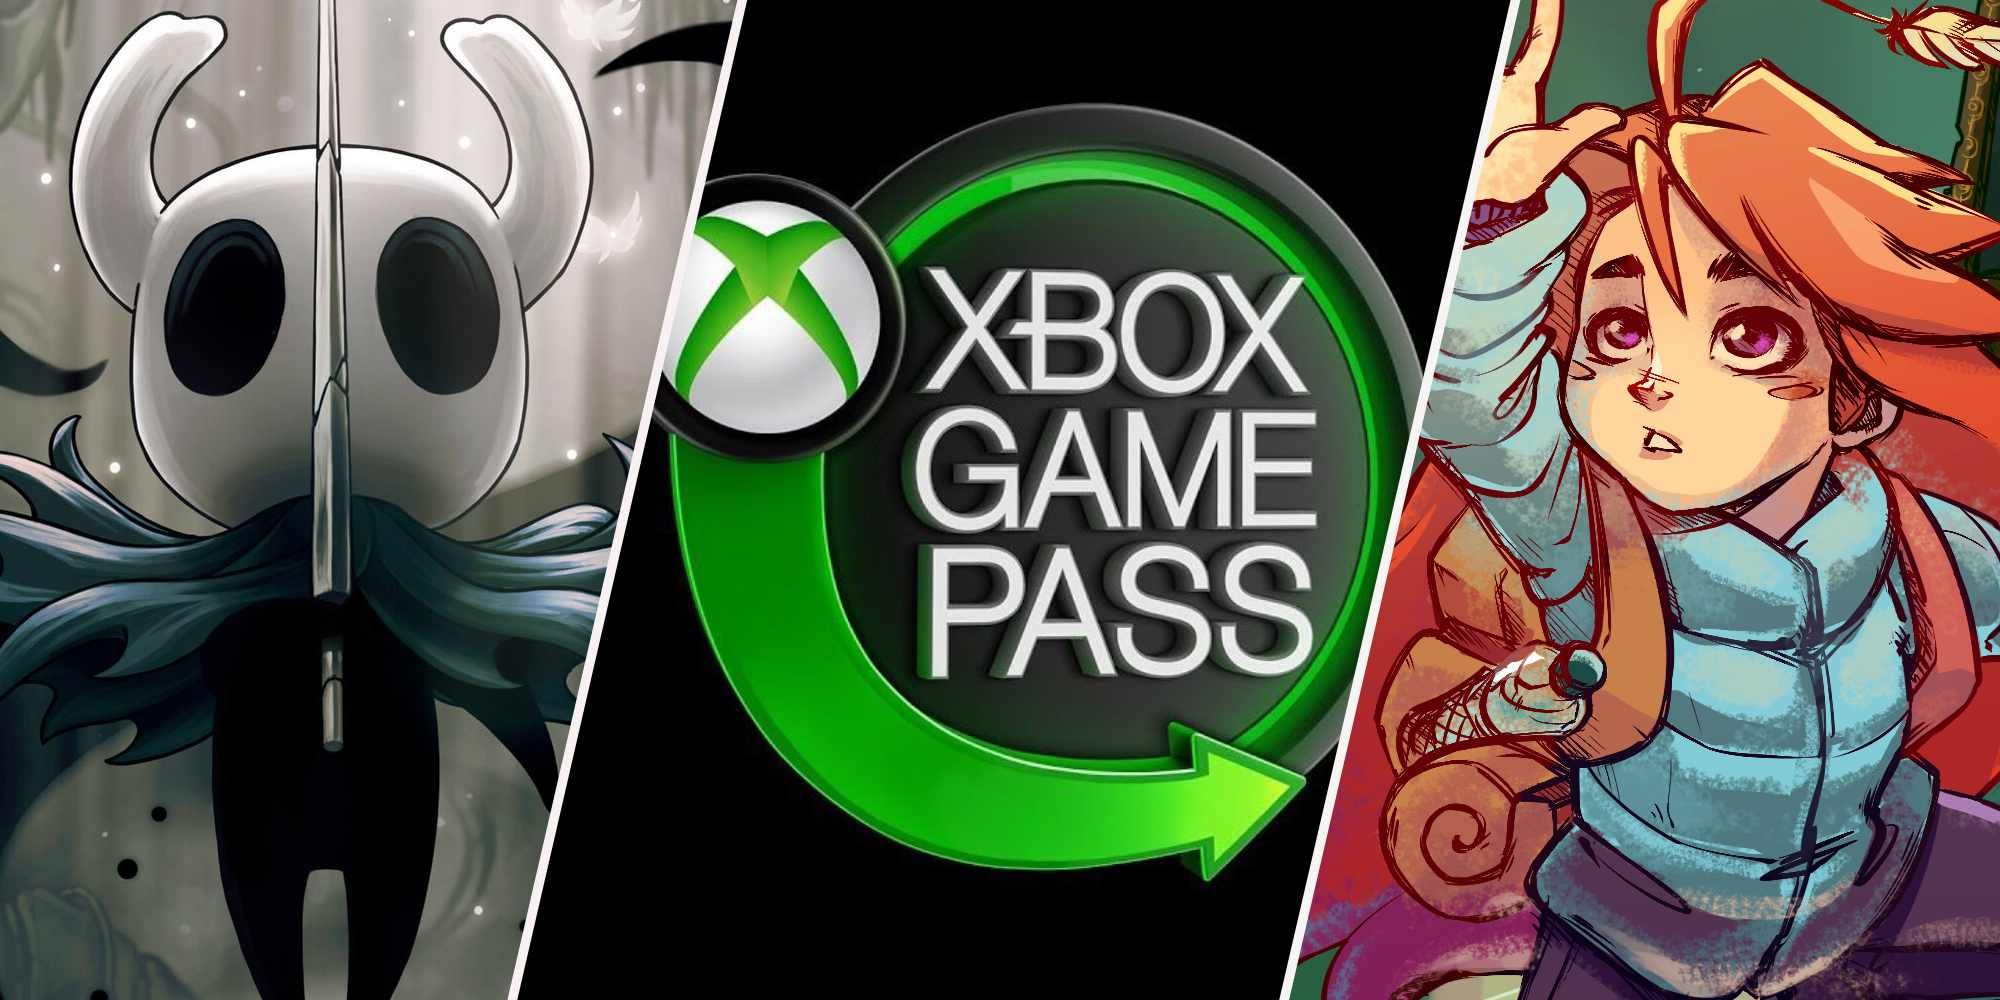 Capa de Hollow Knight, logotipo do Xbox game Pass e capa de Celest dividem imagens lado a lado